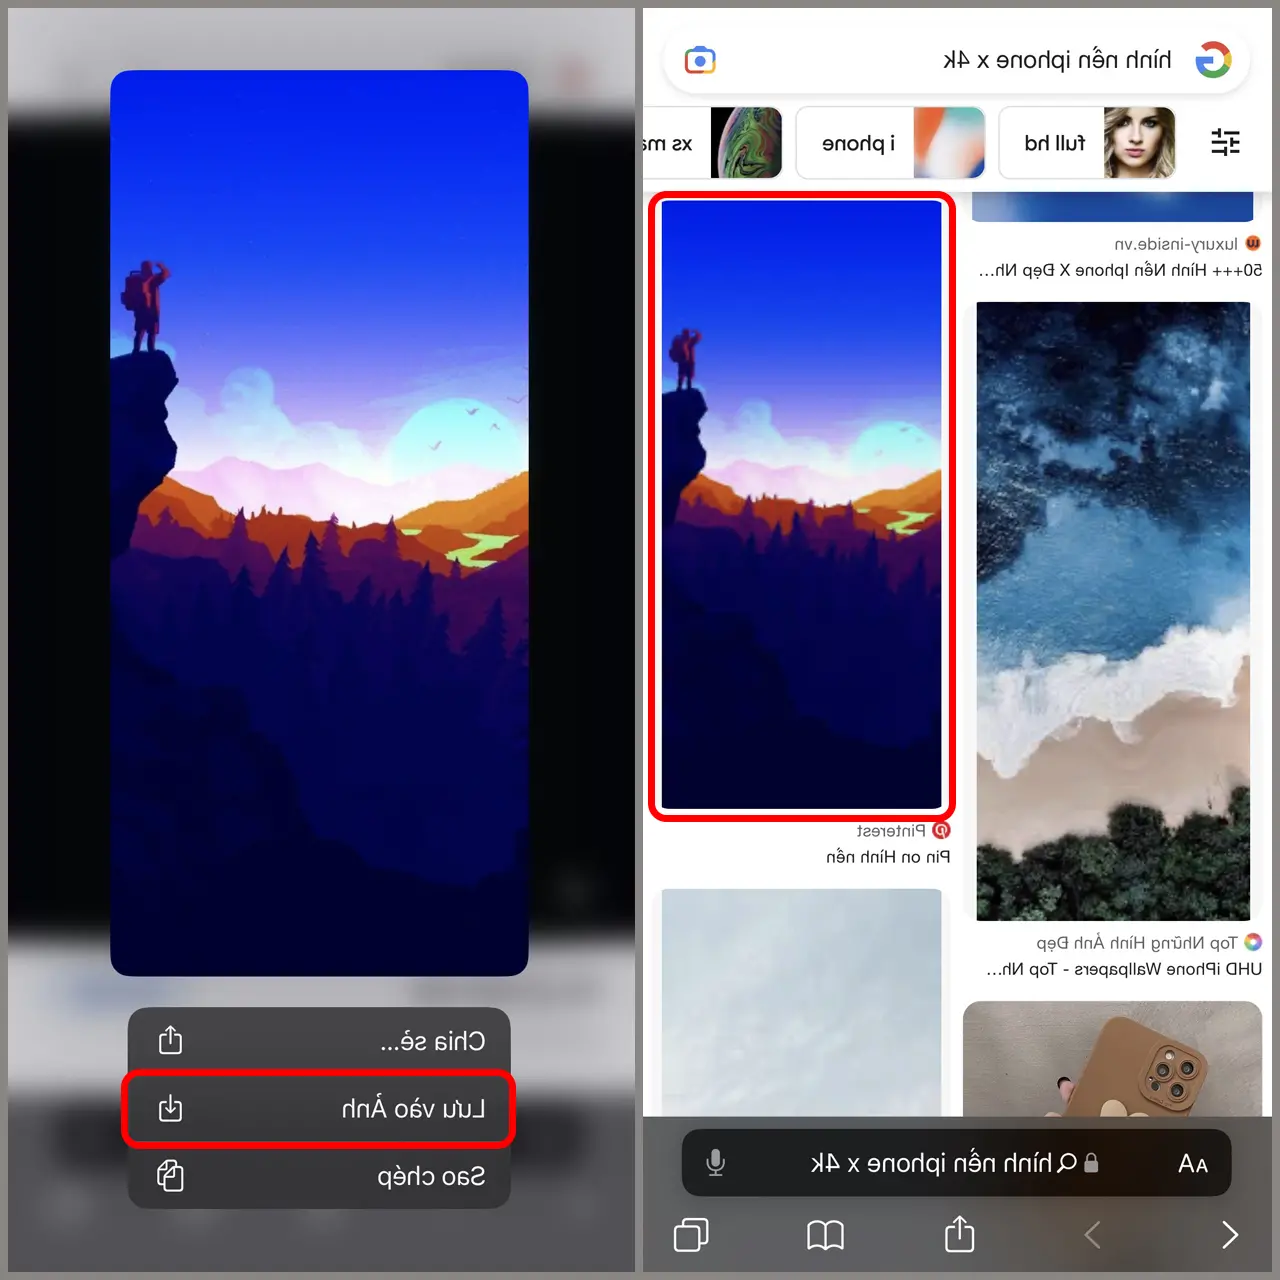 Wallpaper iPhone X, XR, XS, XS Max berkualitas 4K yang cantik dan unik untuk Anda